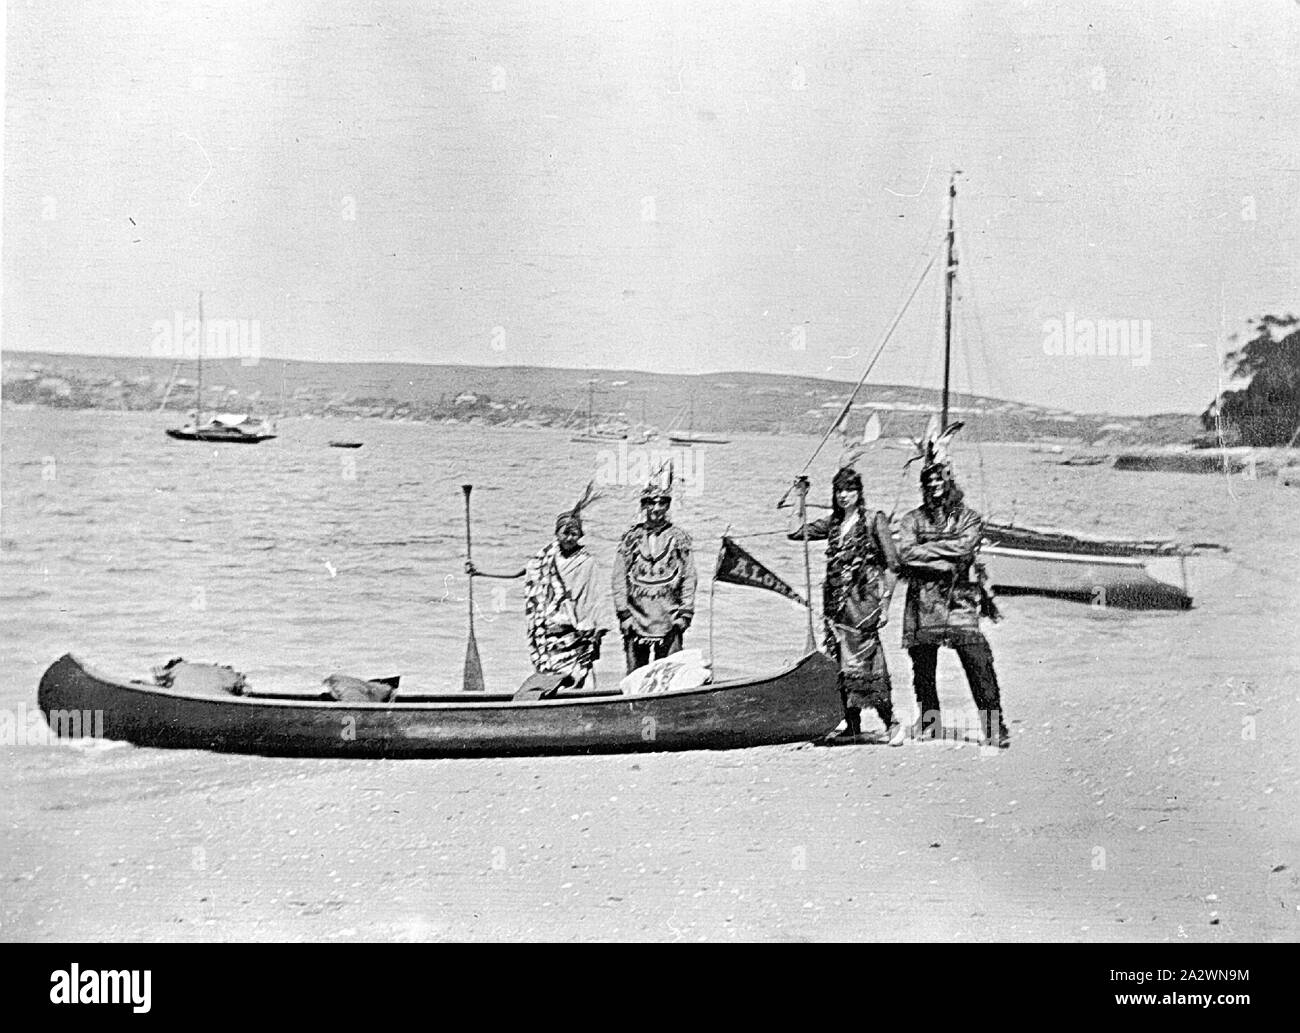 Negativo - persone vestite come i nativi americani con canoe come parte di un carnevale acquatico, Manly, New South Wales 1915, persone vestite come indiani americani con la loro canoa. Essi sono parte di un carnevale acquatico Foto Stock